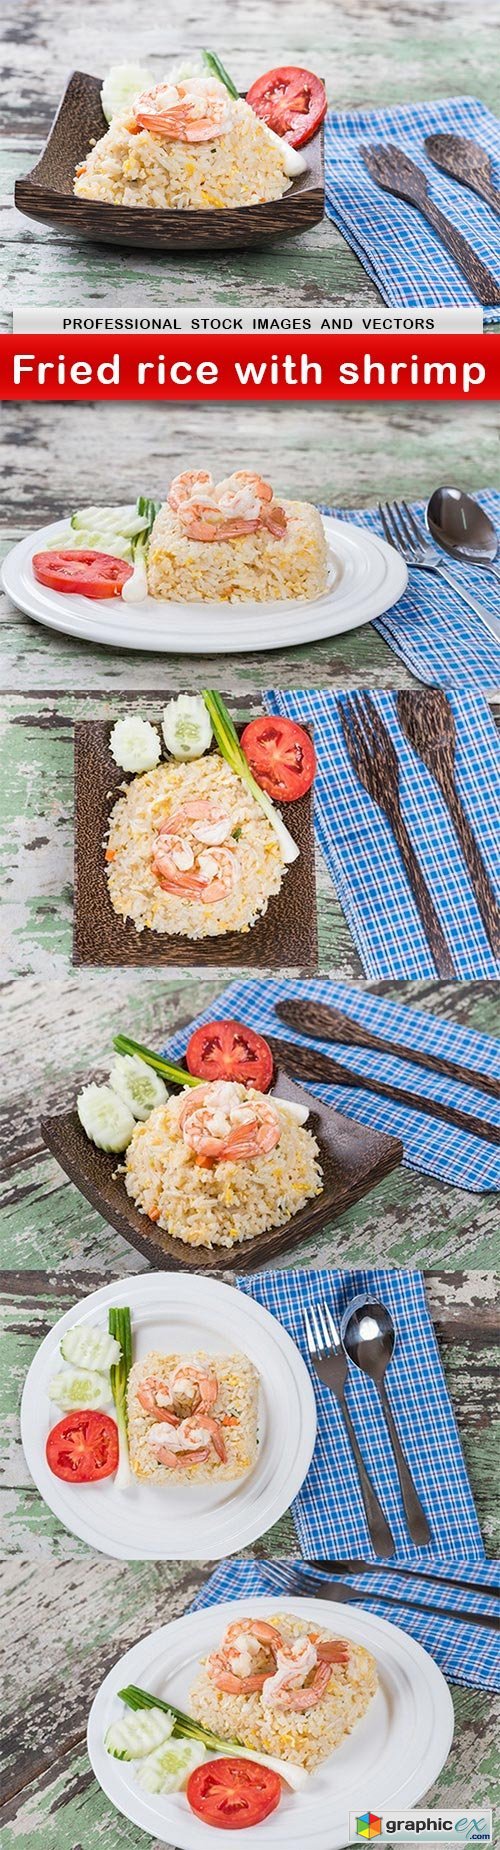 Fried rice with shrimp - 6 UHQ JPEG